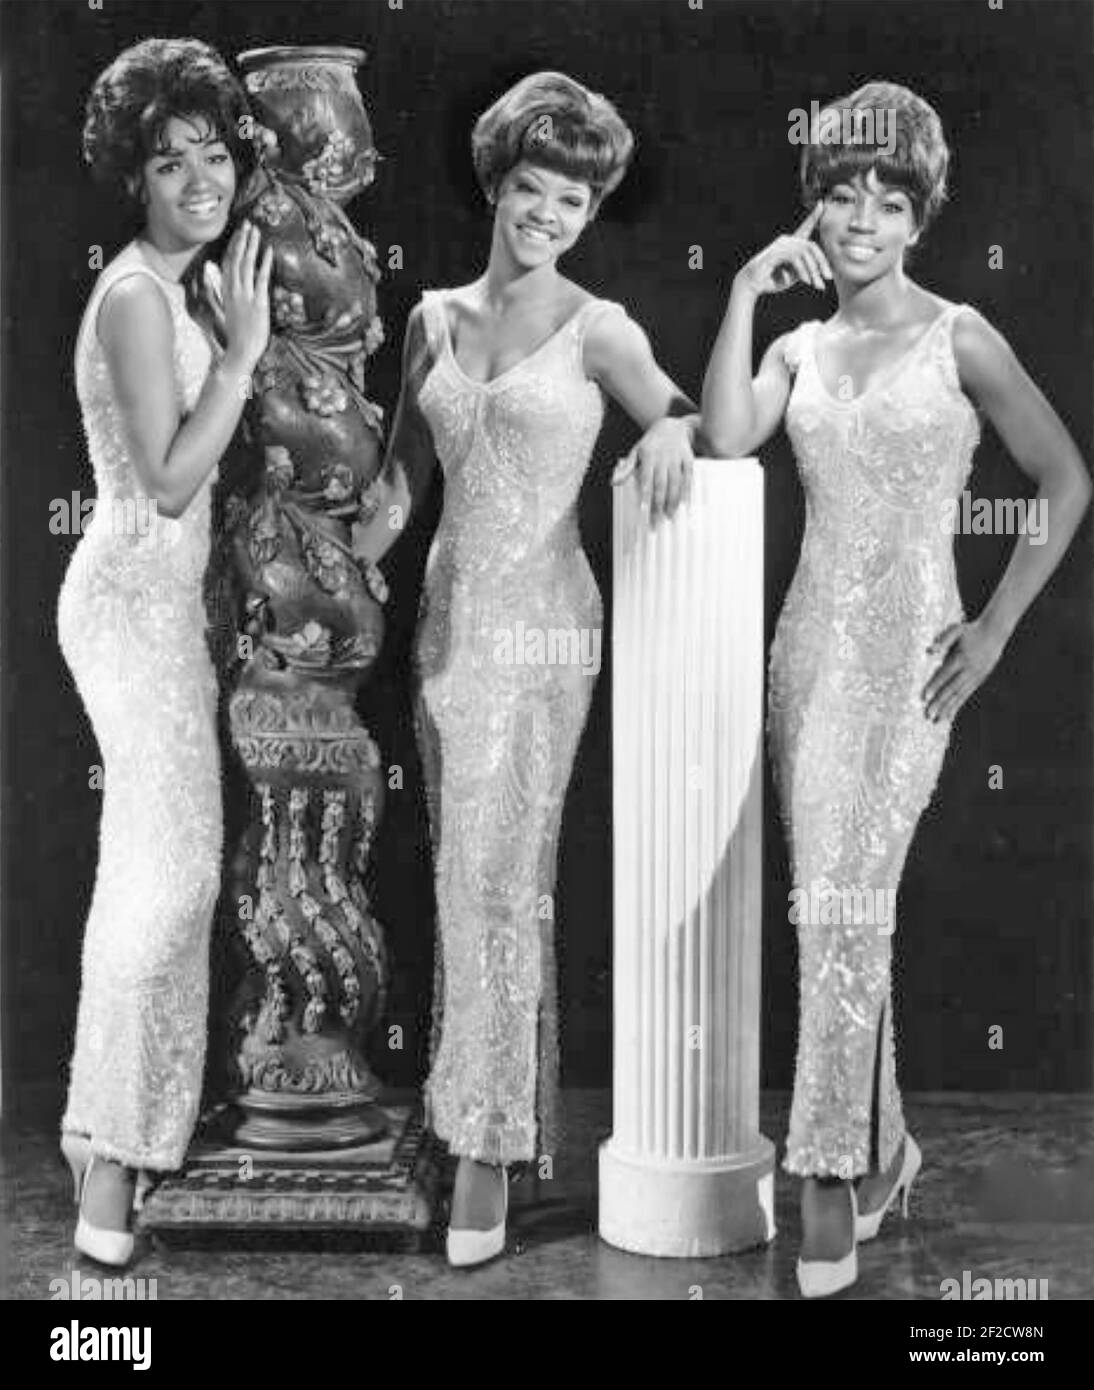 LA PHOTO PROMOTIONNELLE À TROIS DEGRÉS du trio vocal américain 1963 Banque D'Images